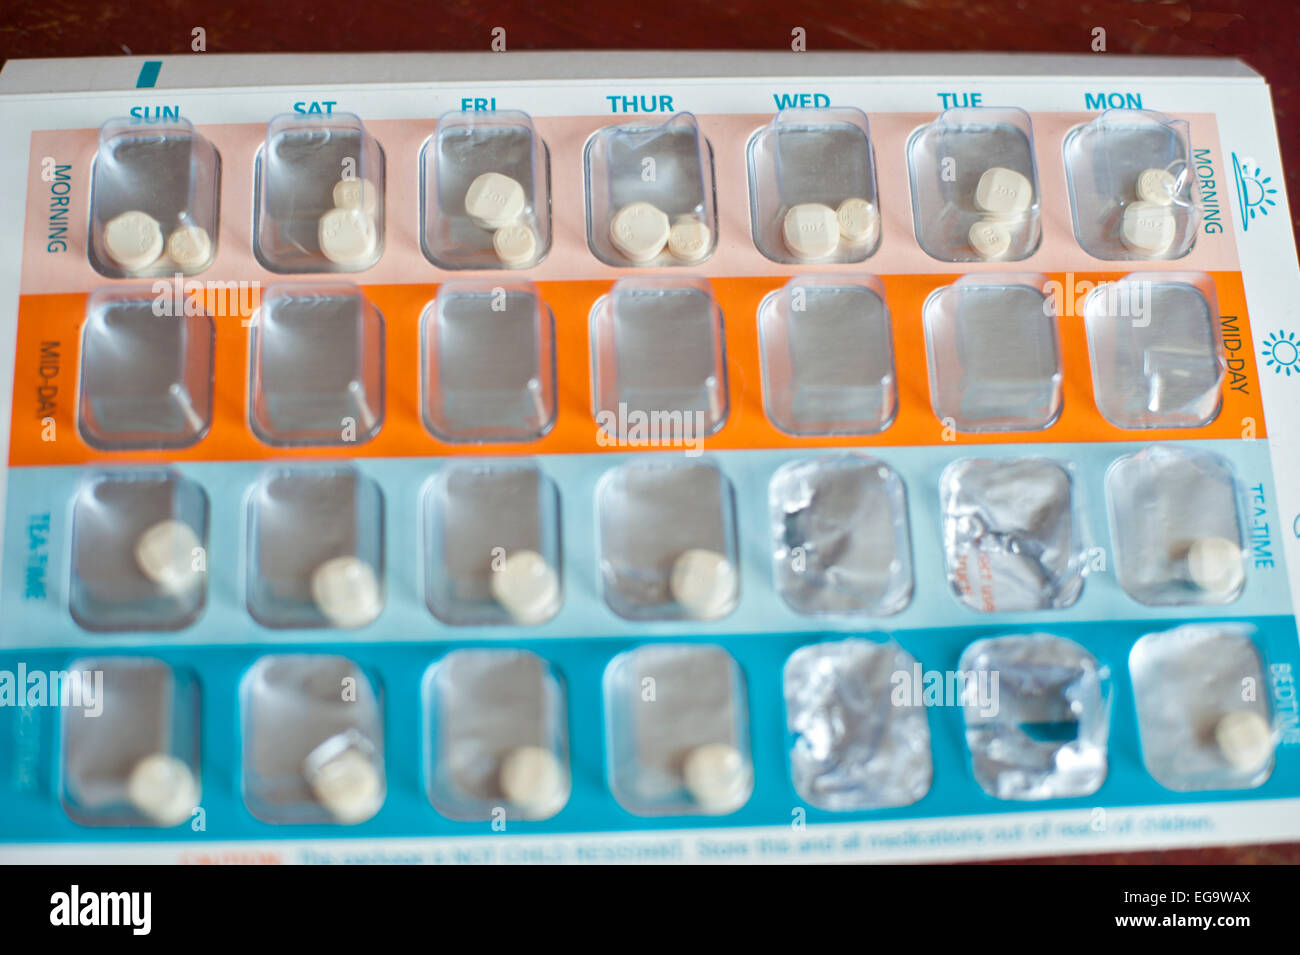 Una pillola box con compresse in disposti per data per lungo termine condizione medica o di disabilità Foto Stock